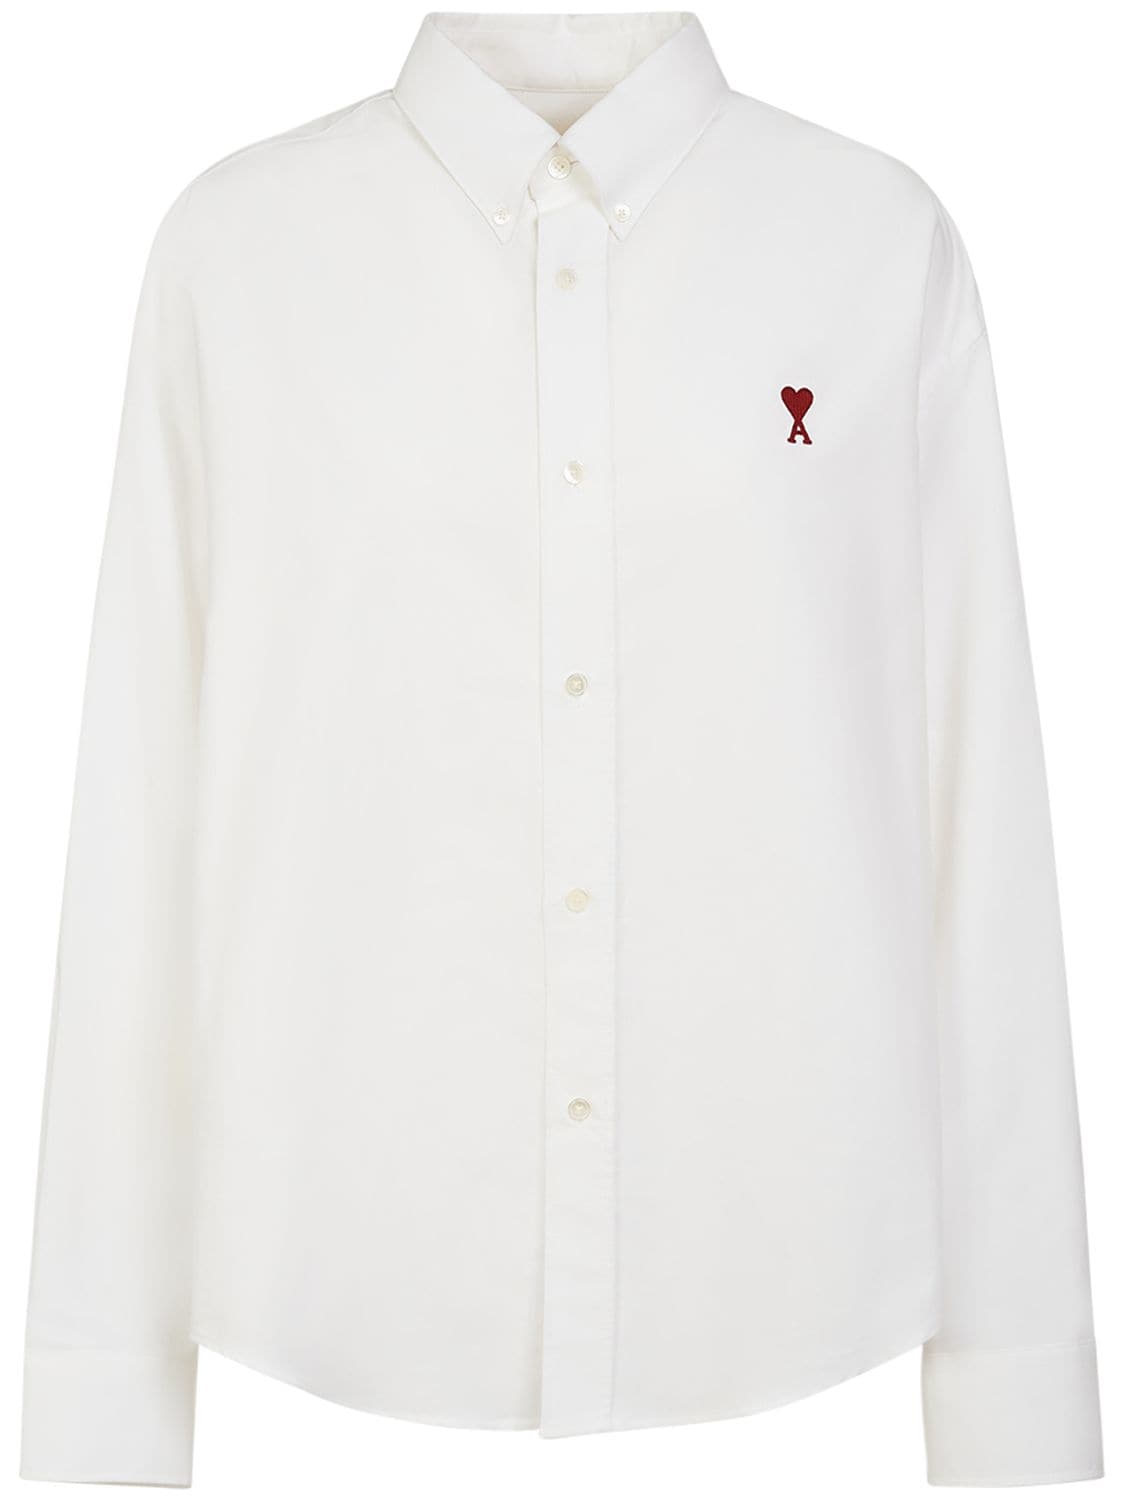 Ami Alexandre Mattiussi Ami De Coeur Boxy Fit Cotton Shirt In White